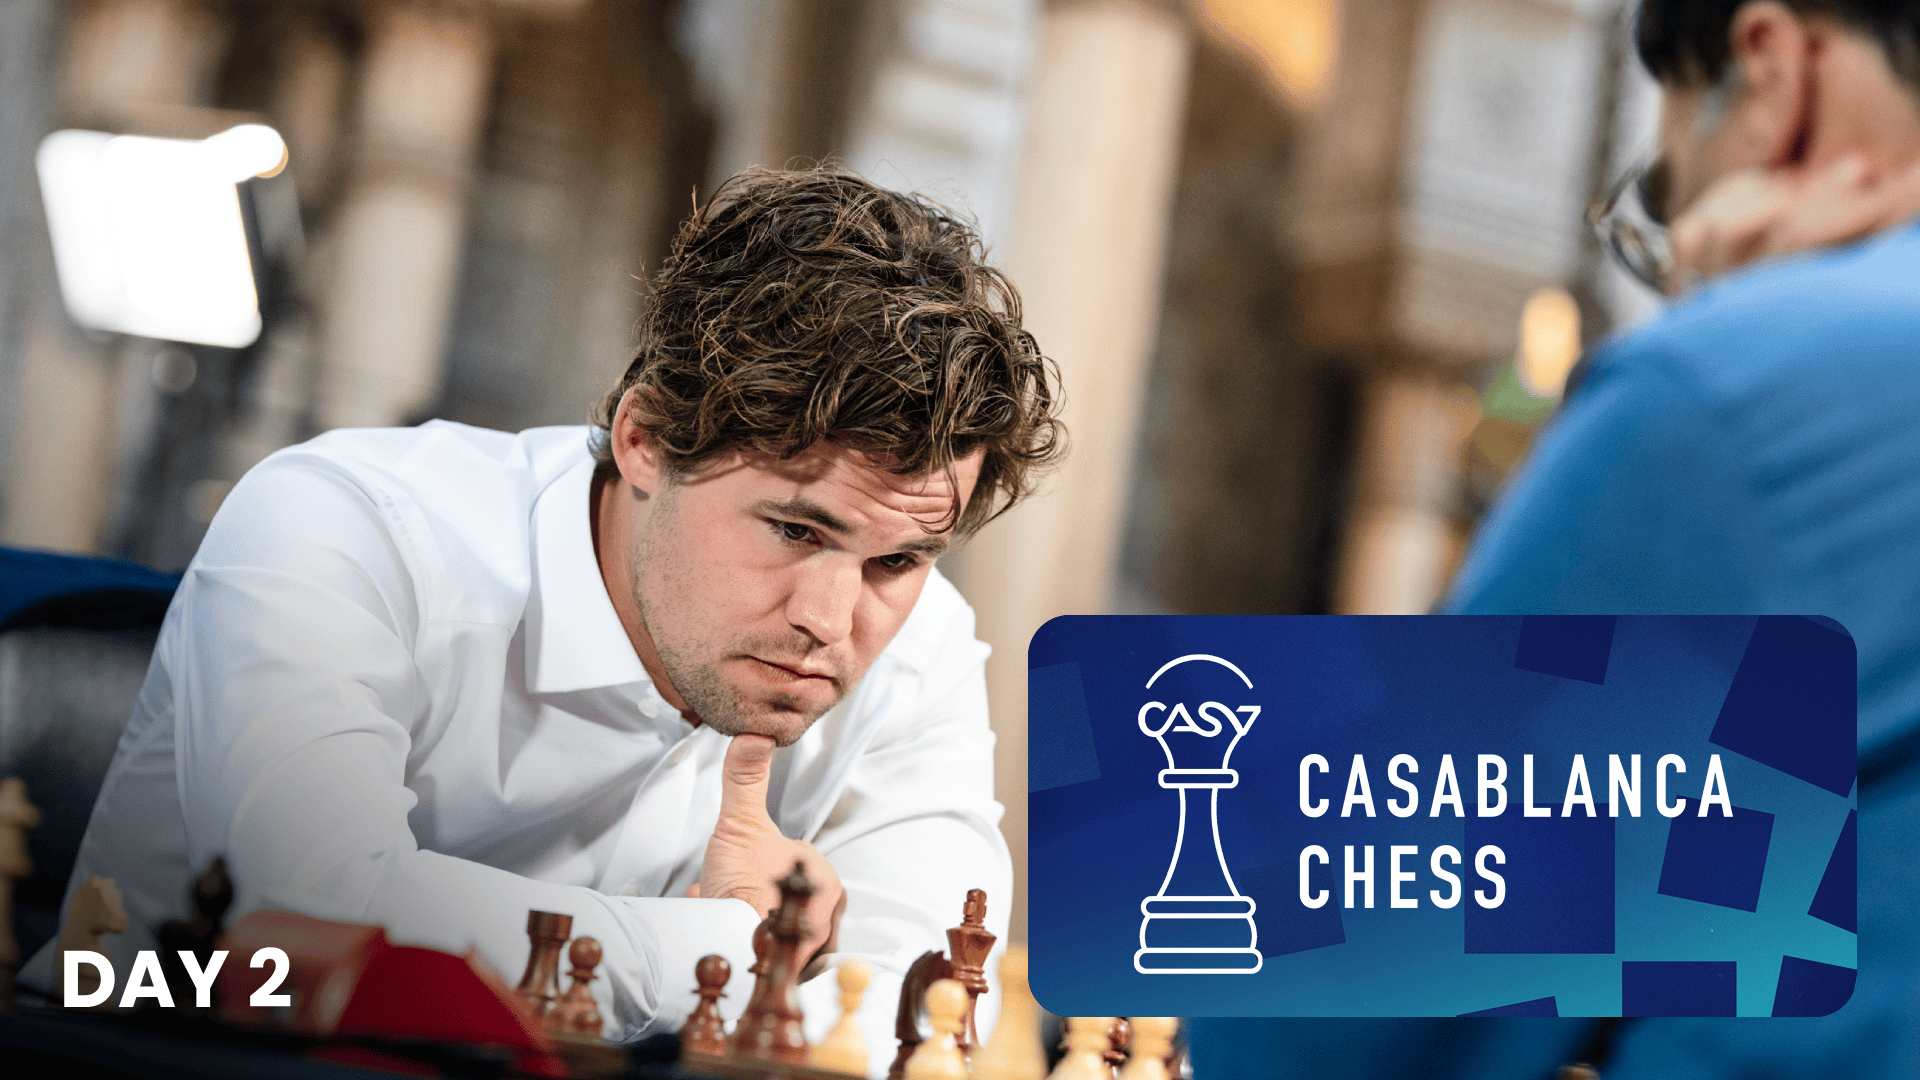 卡尔森赢得卡萨布兰卡国际象棋锦标赛并攀登卡斯帕罗夫的珠穆朗玛峰